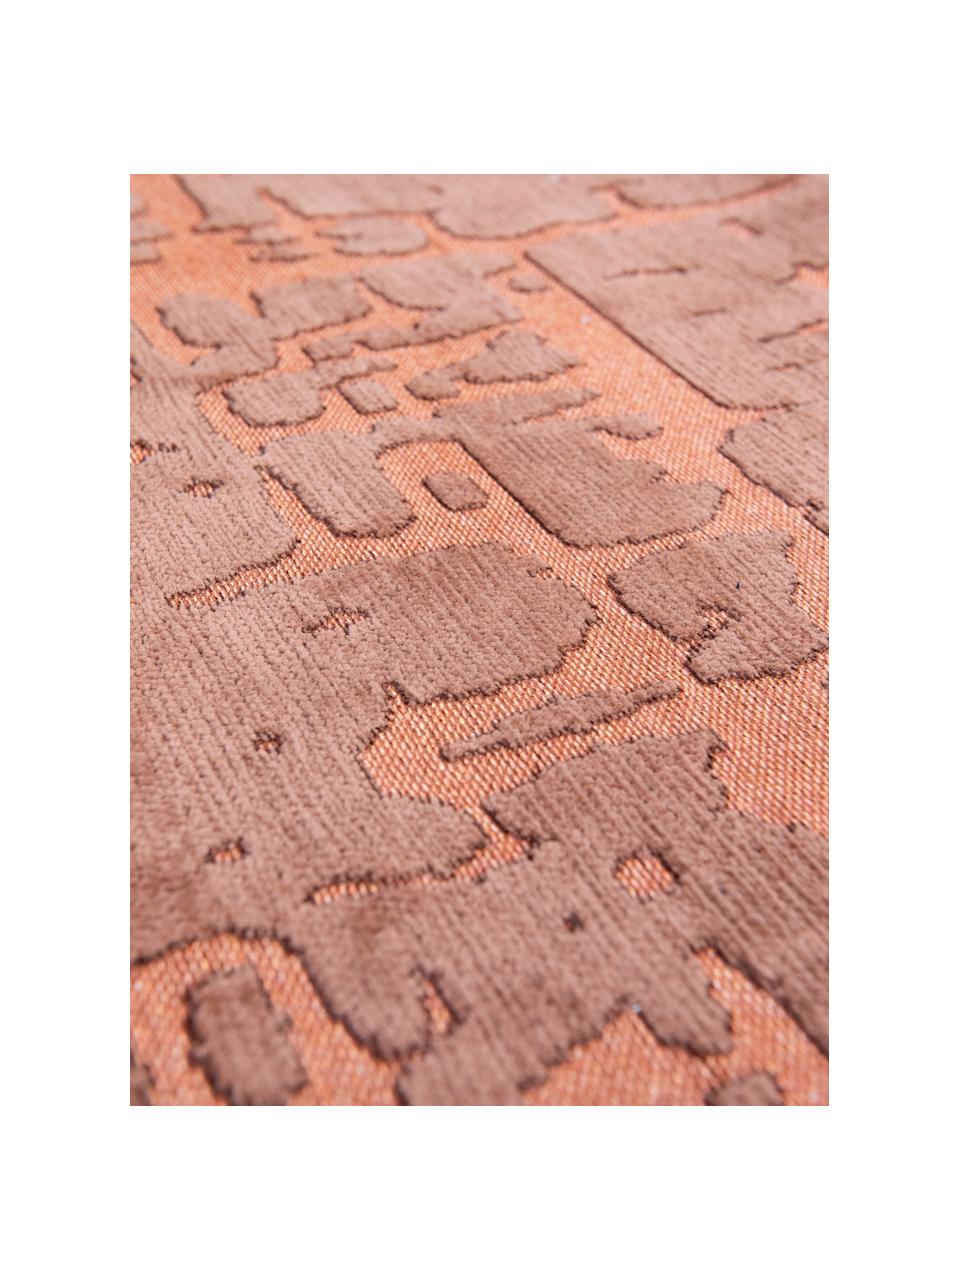 Teppich Perriers mit Hoch-Tief-Effekt, 100 % Polyester, Terrakotta, B 80 x L 150 cm (Größe XS)